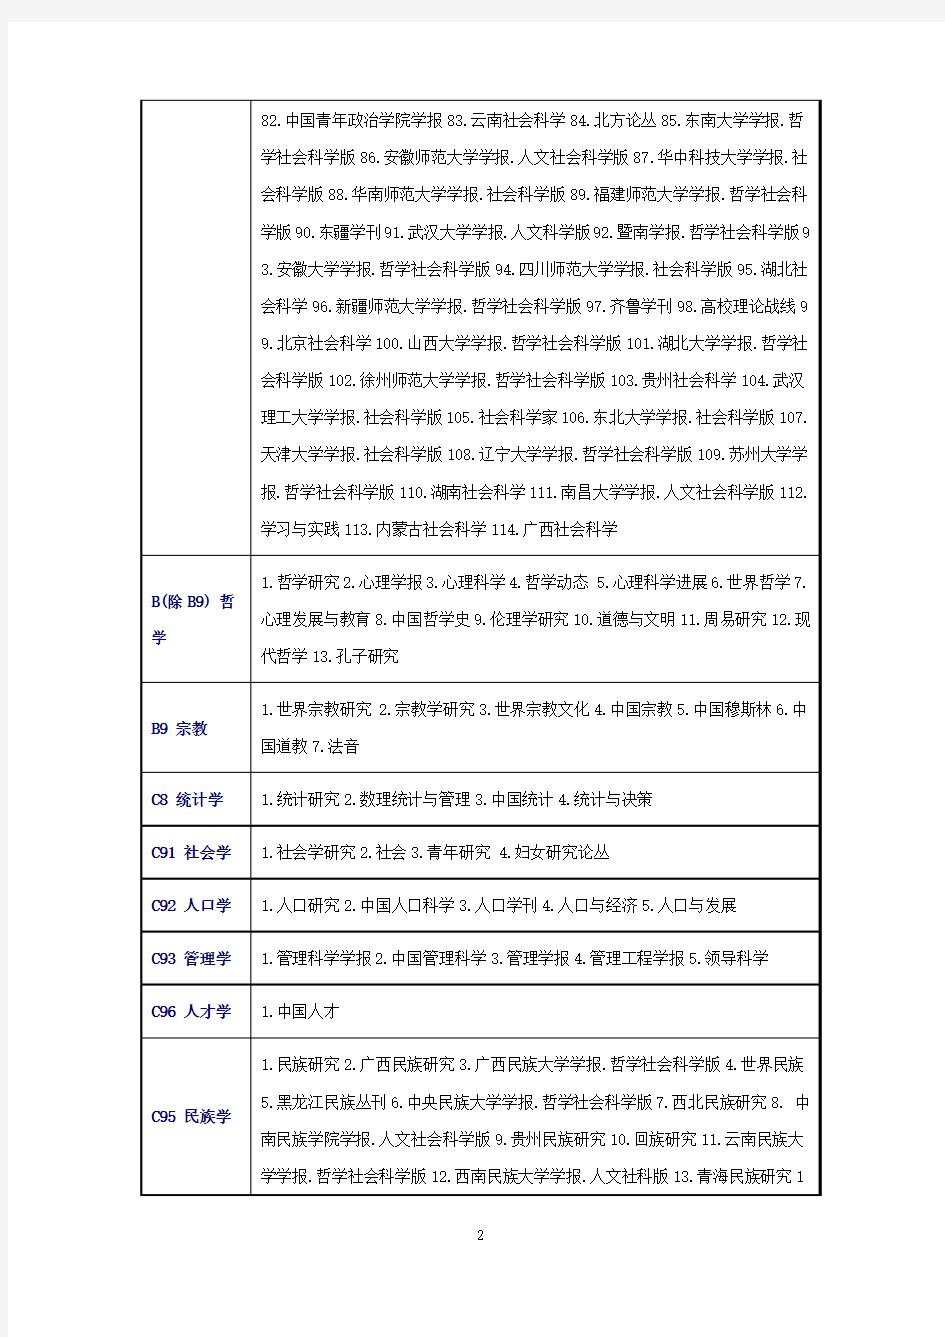 2015年北大版《中文核心期刊要目总览》